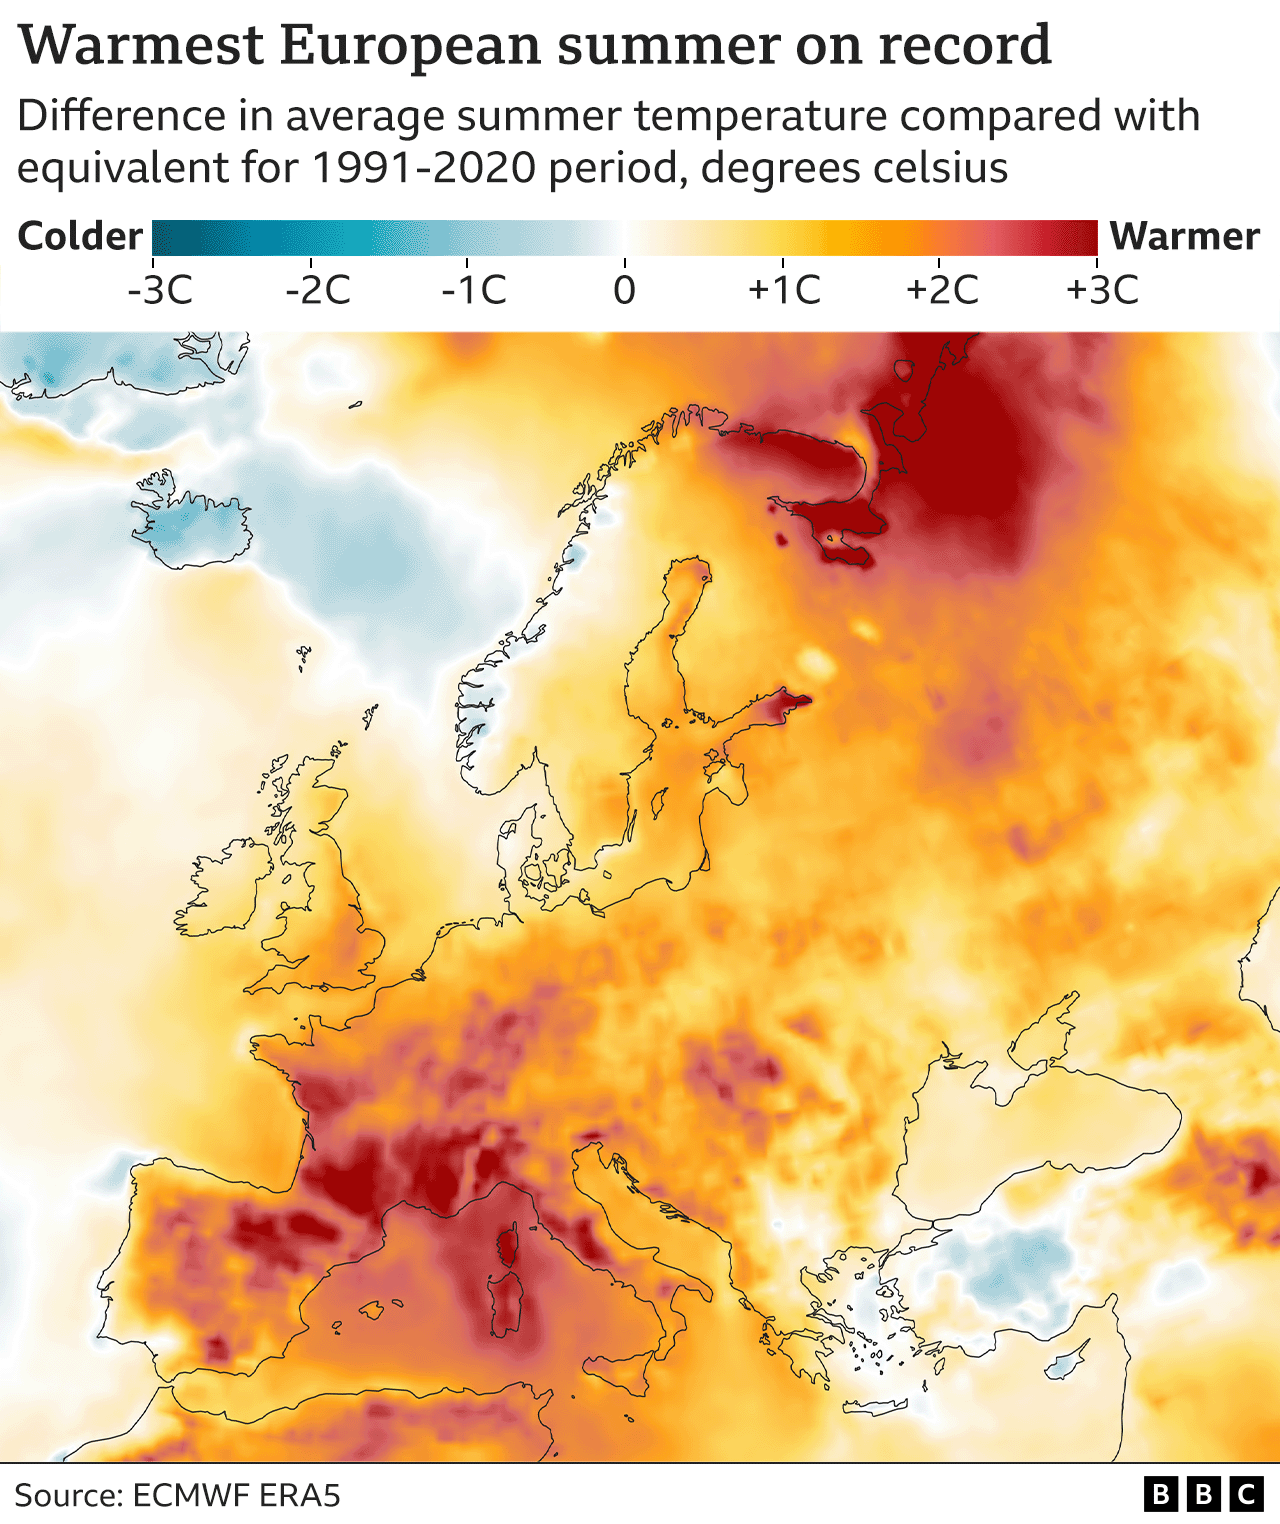 Карта, показывающая самое теплое лето в Европе за всю историю наблюдений, с указанием температур выше среднего (1991-2020 гг.) в районах южной Испании и Франции, в частности.